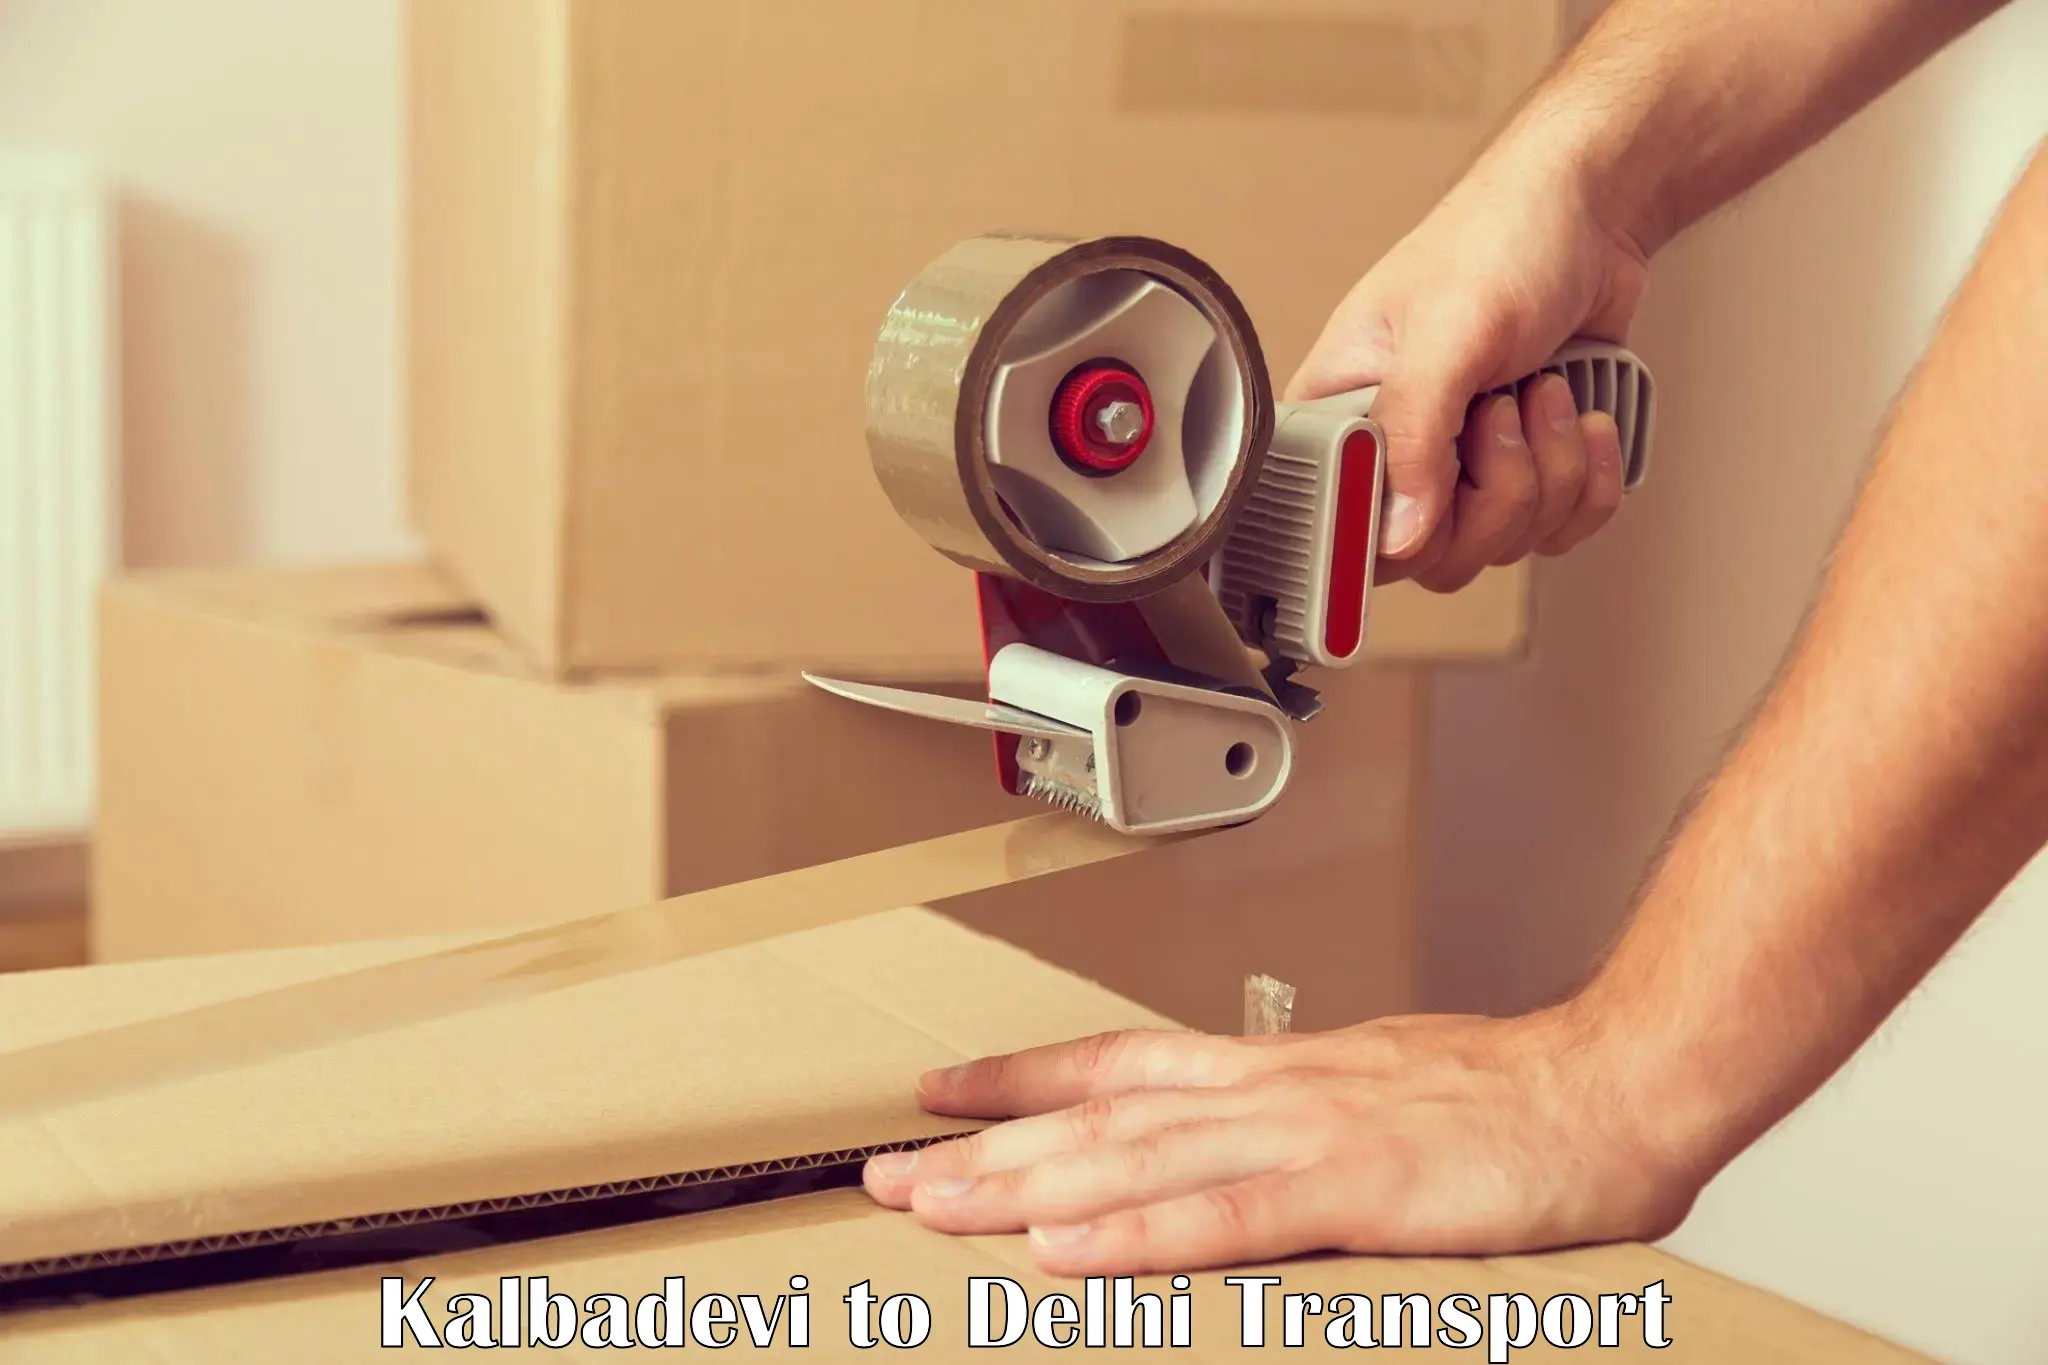 International cargo transportation services Kalbadevi to Jamia Millia Islamia New Delhi